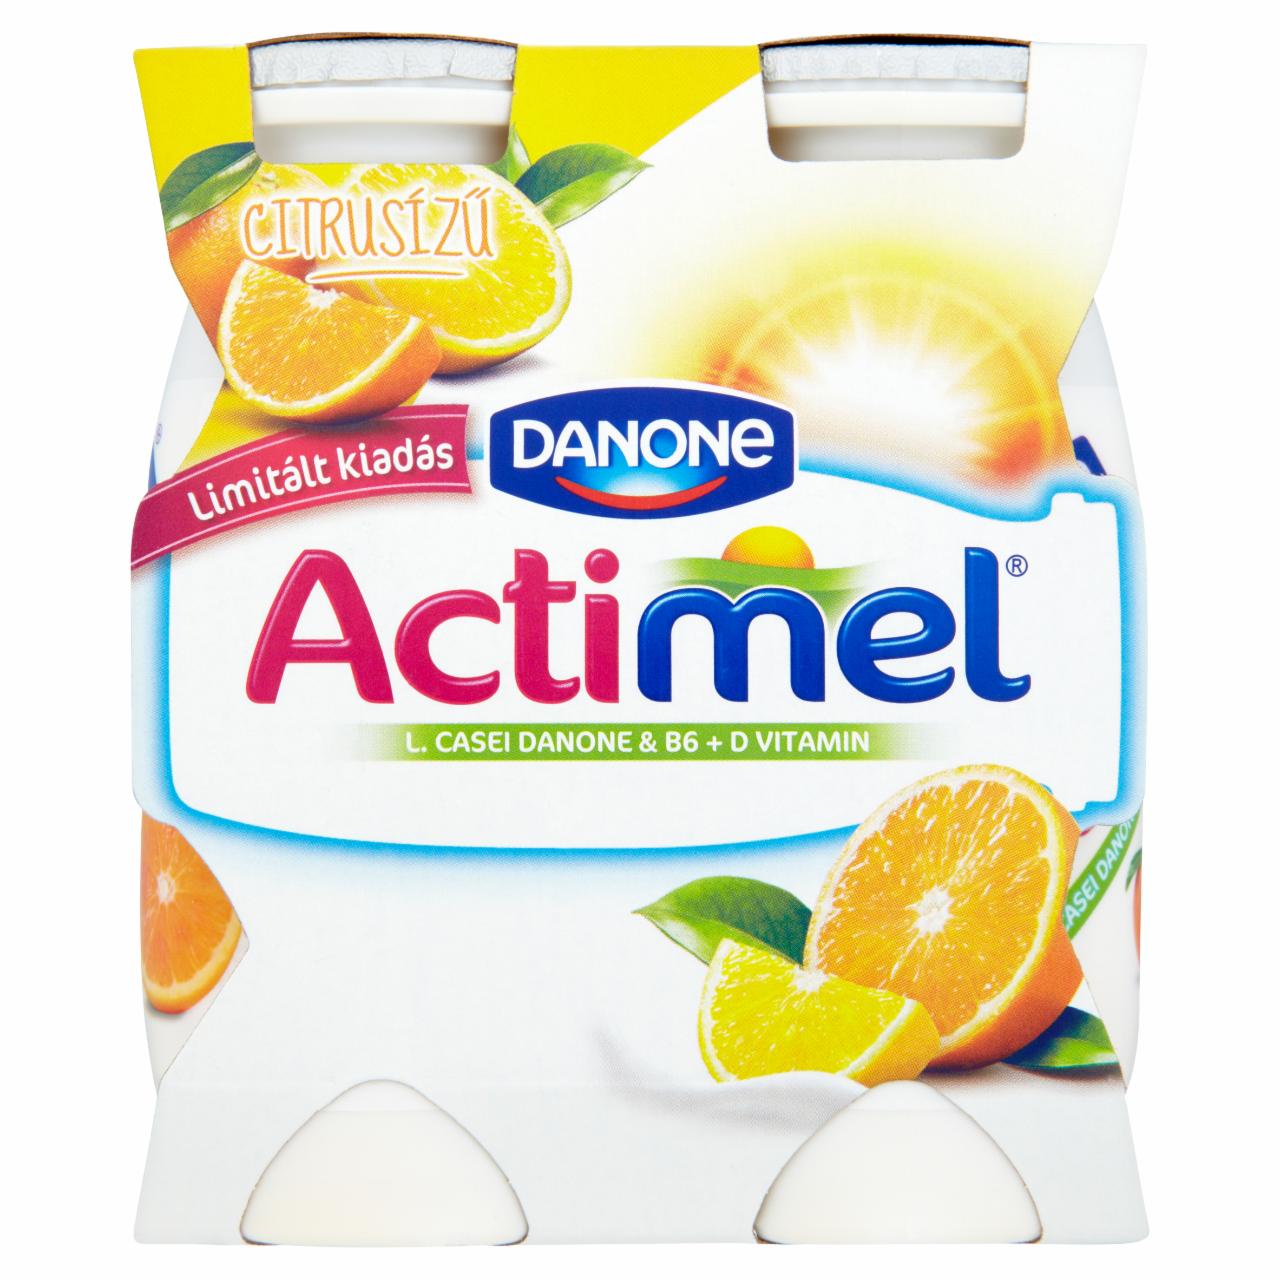 Képek - Danone Actimel zsírszegény, élőflórás, citrusízű joghurtital 4 x 100 g